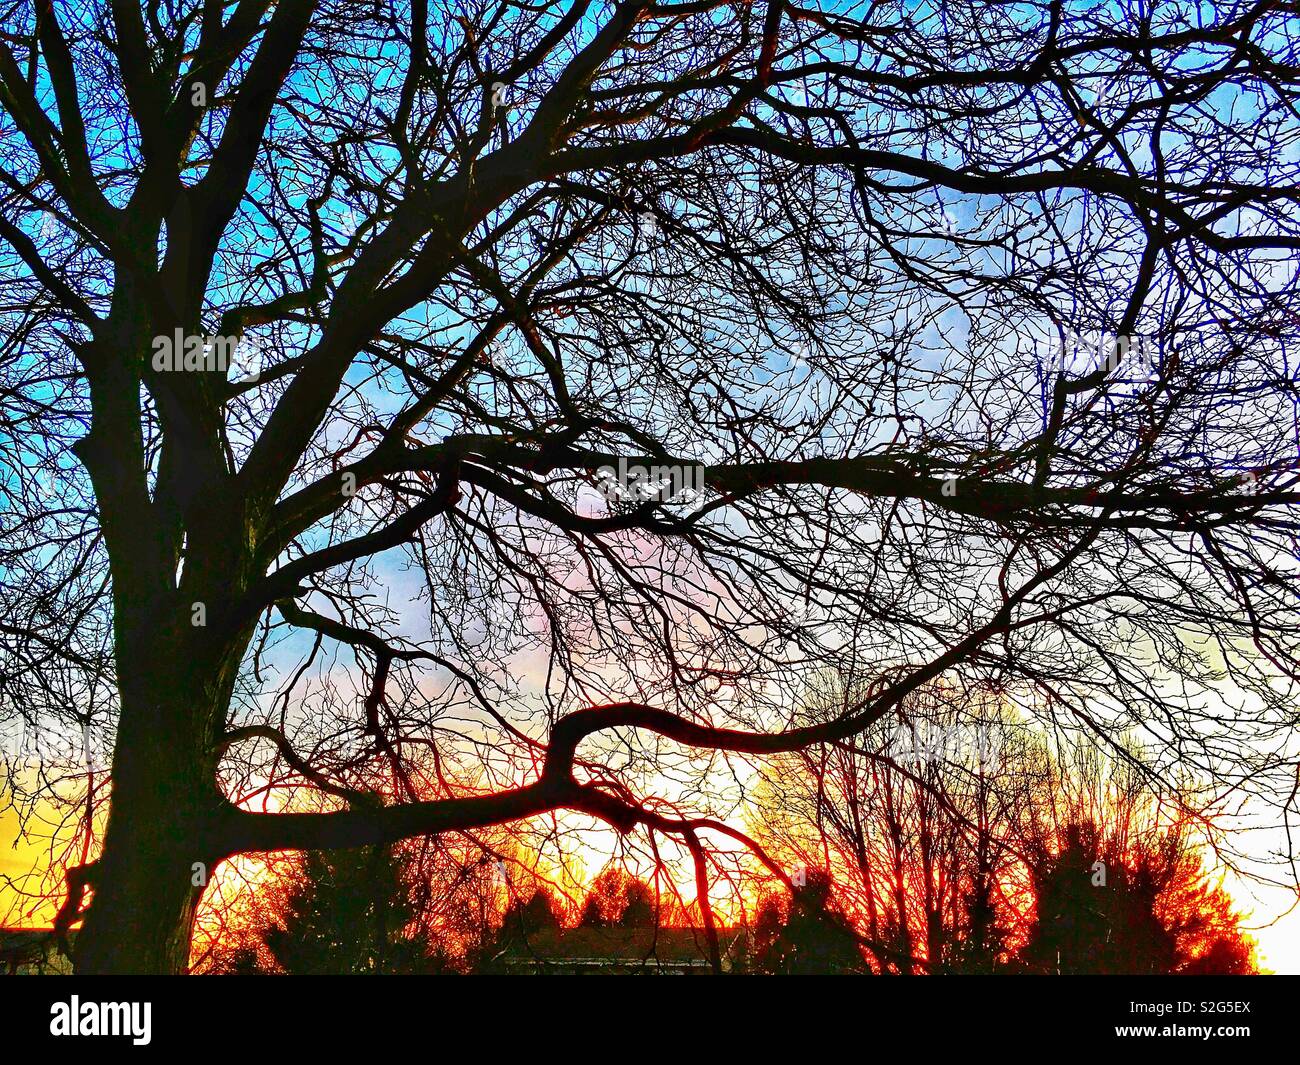 Deshojado oscuros árboles caducifolios al atardecer como crepúsculo emerge de un intenso azul violeta, rosa y naranja cielo Foto de stock